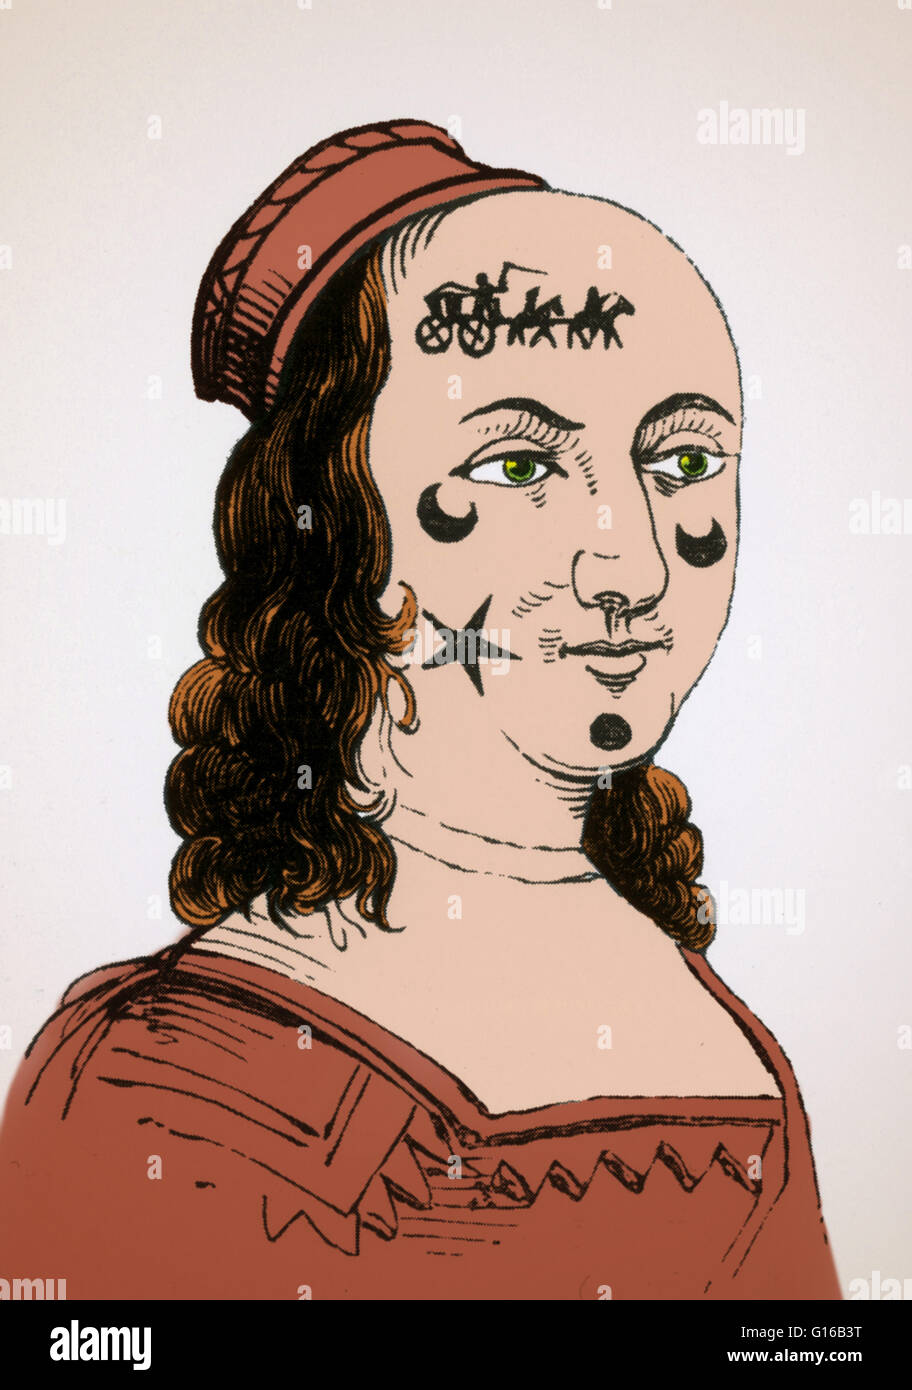 Un 17e siècle gravure d'un visage rapiécé. Dans les années 1600, il était à la mode pour les femmes et les hommes pour coller taches noires sur leurs visages. Ici les correctifs sont en forme d'étoiles et de lunes et un chariot avec des chevaux. Au début, les correctifs peuvent h Banque D'Images